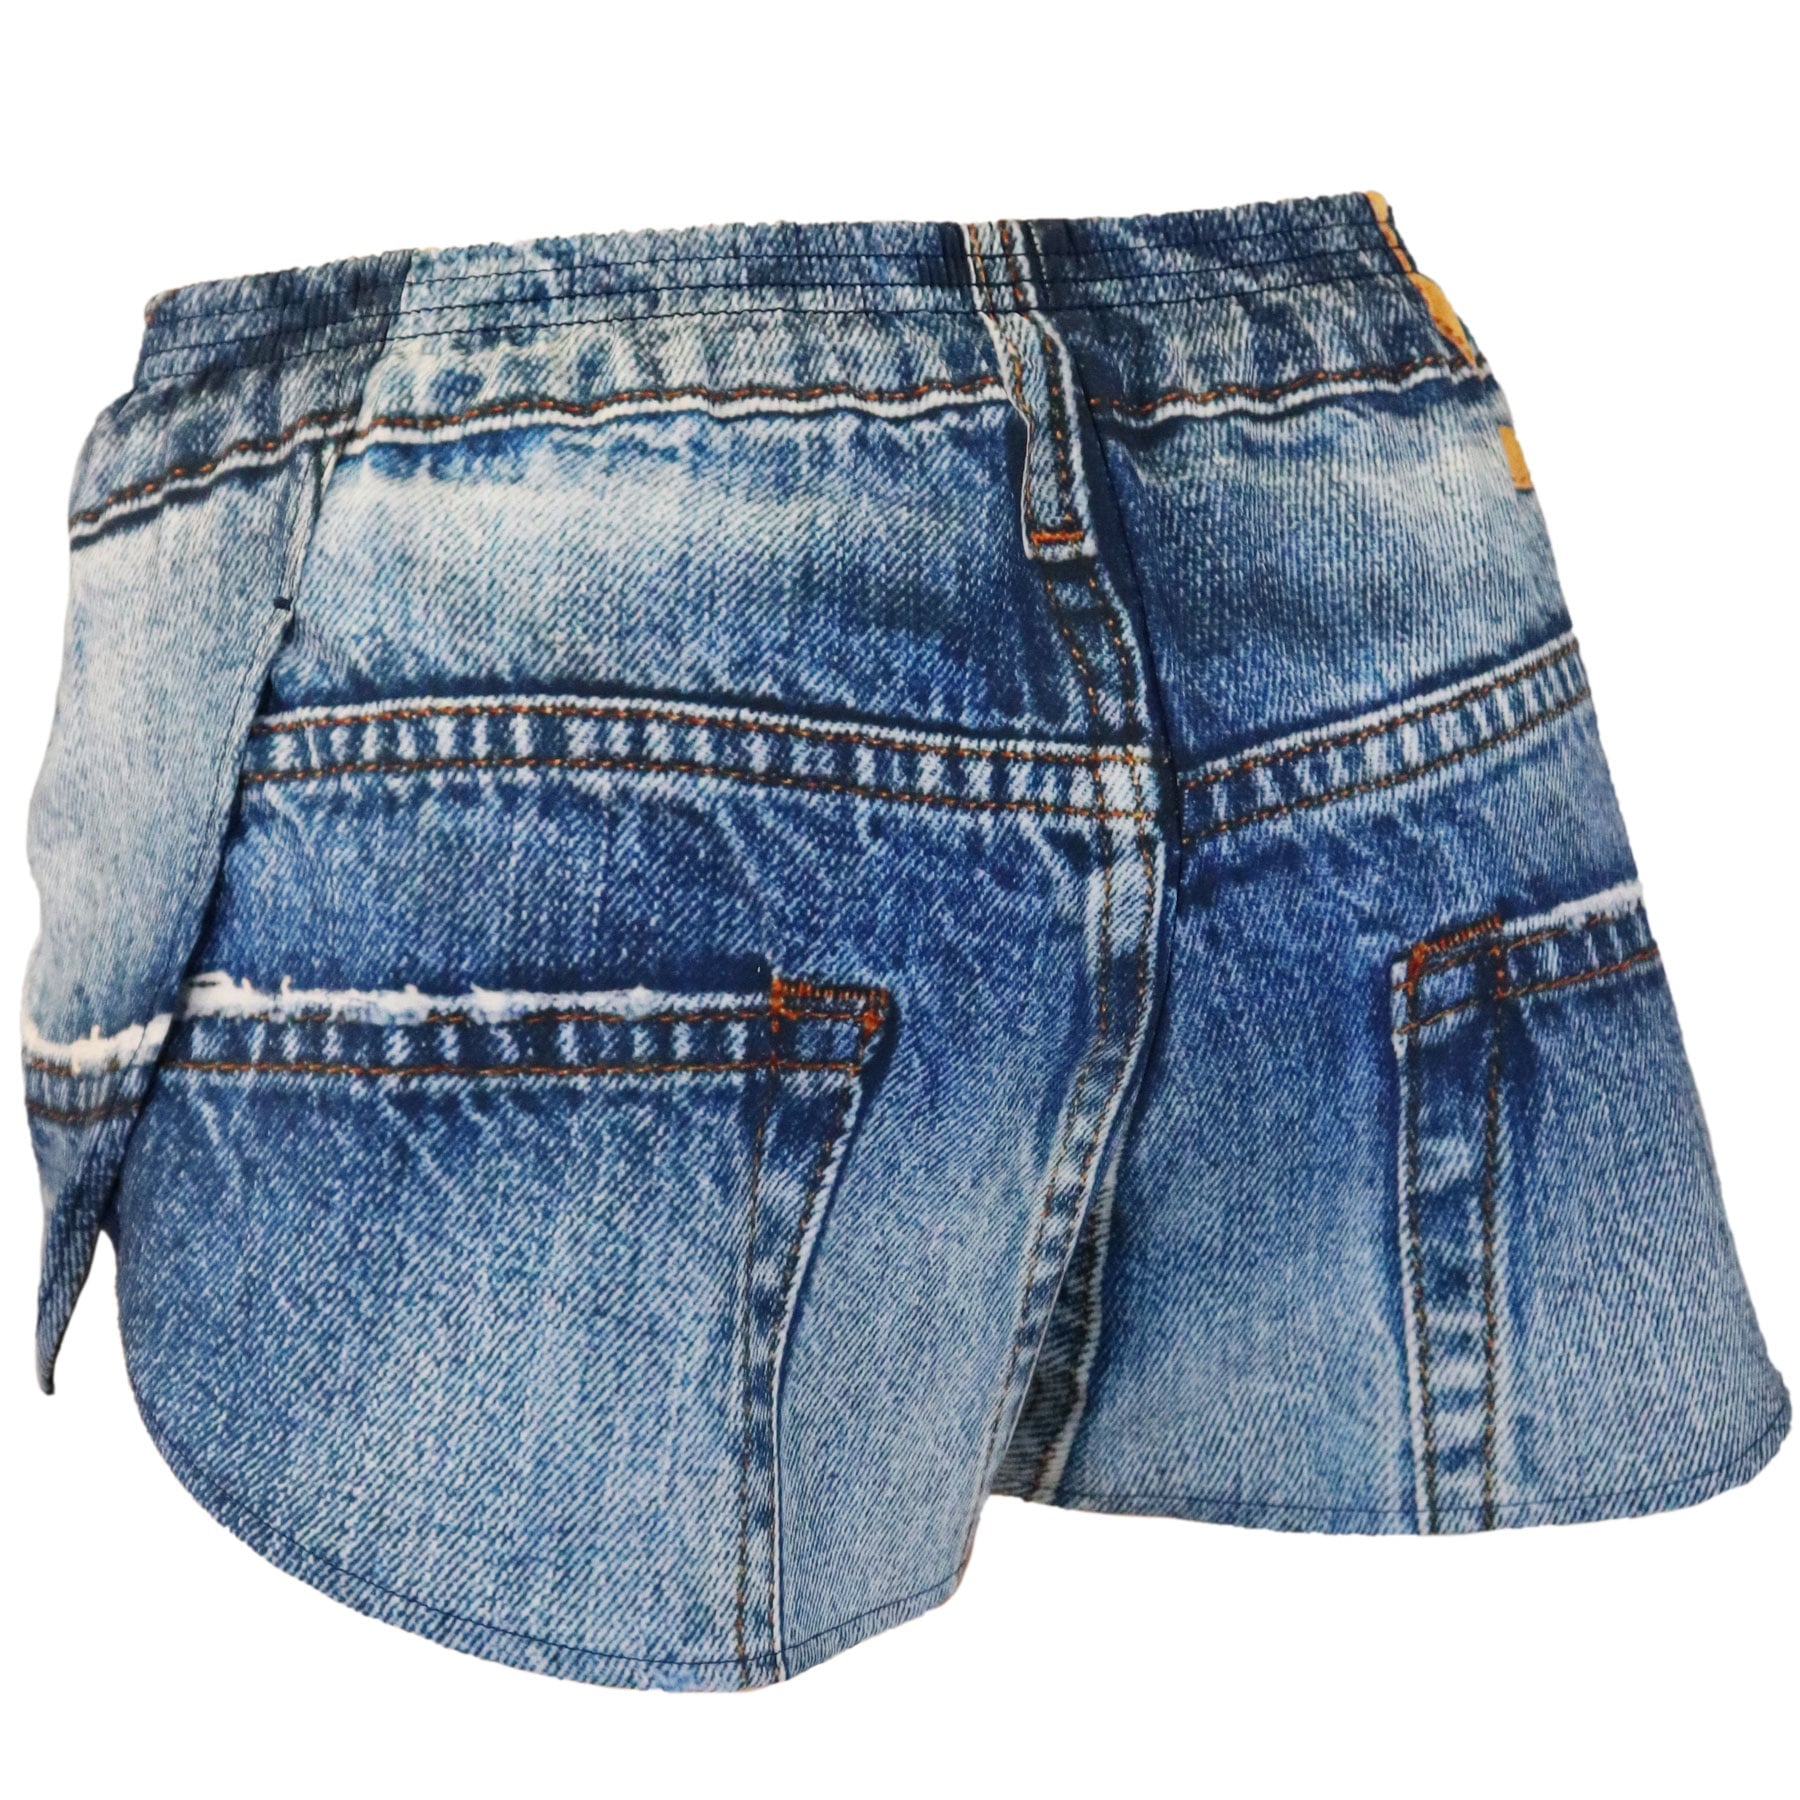 B.O.A JORTS- Dam 1".  Dam shorts med jeans motiv. Träna utan något skav.